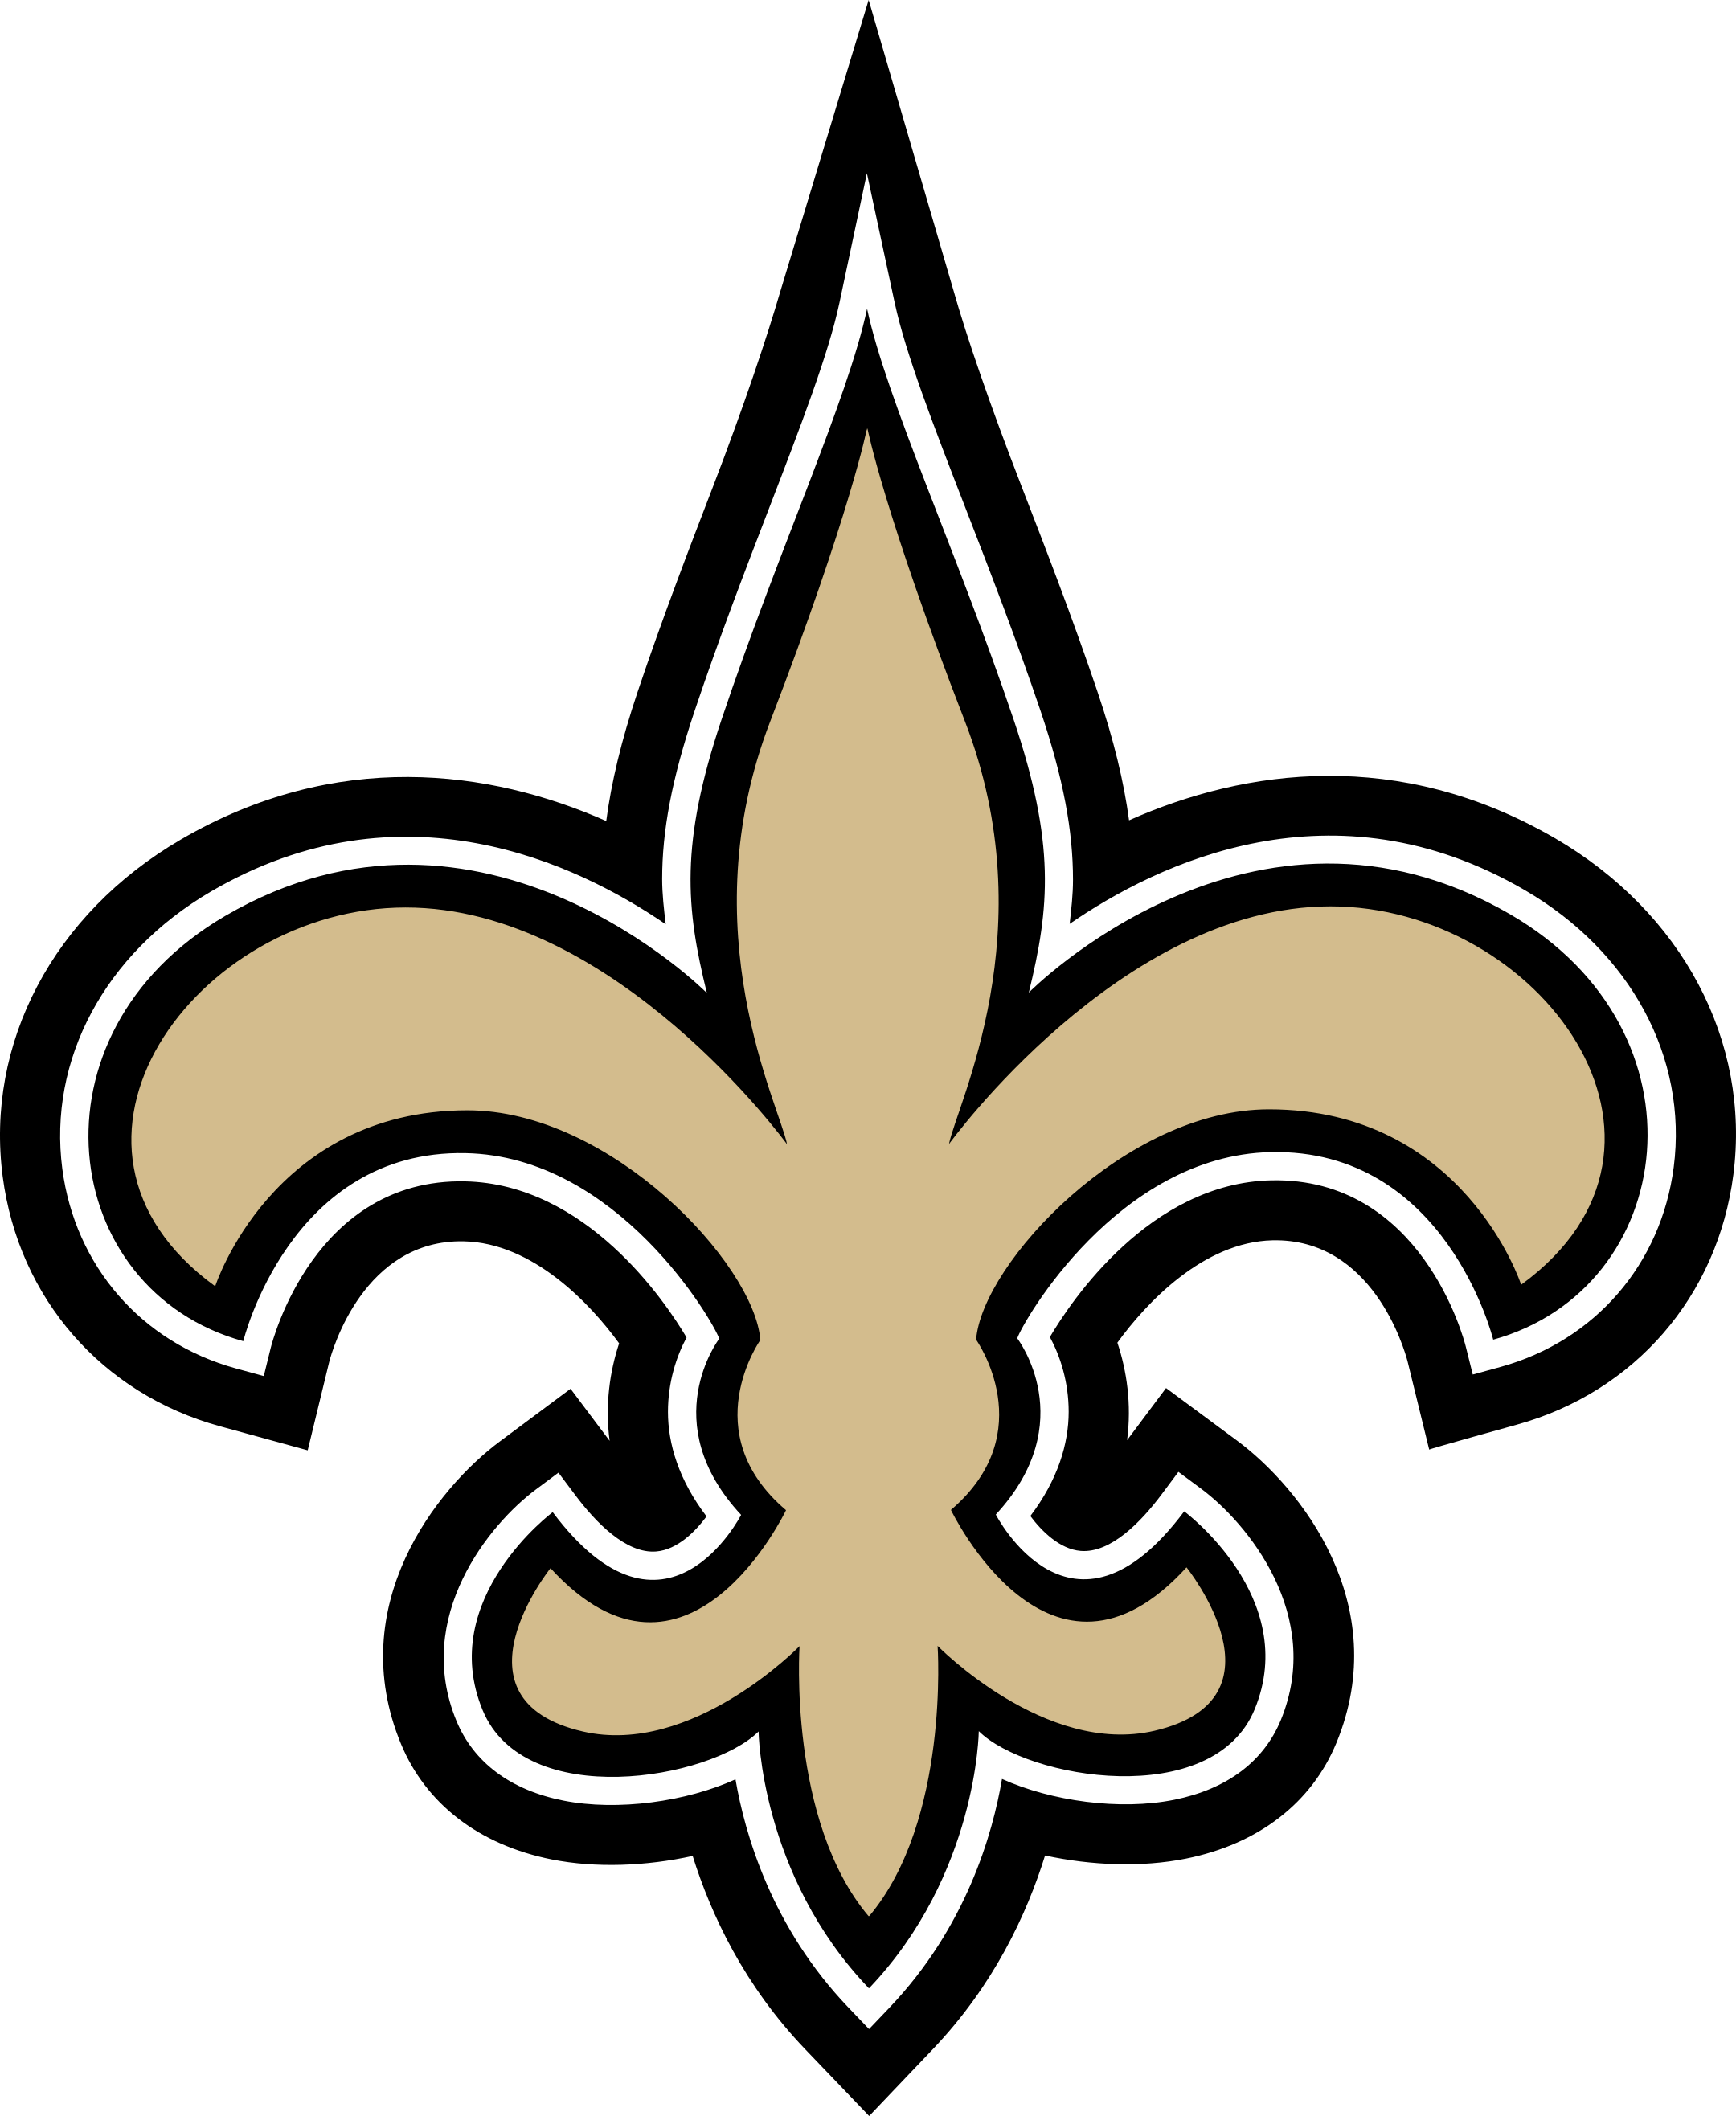 new orleans saints logo 1 - New Orleans Saints Logo